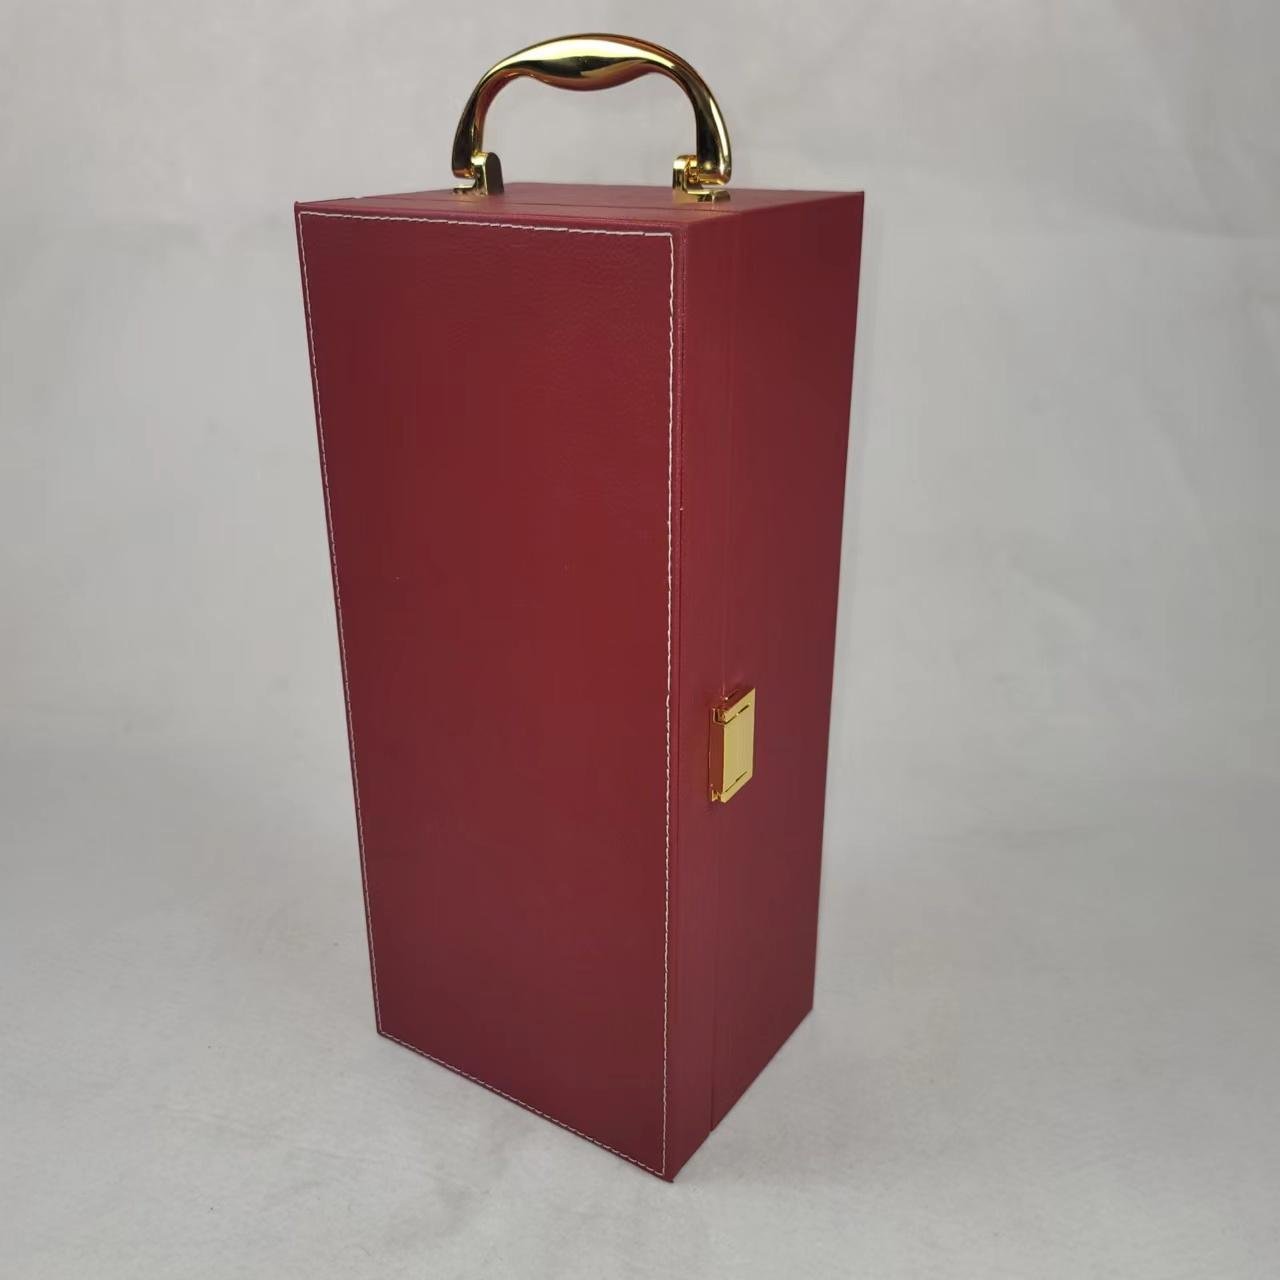 紅酒木盒 葡萄酒木禮盒 4